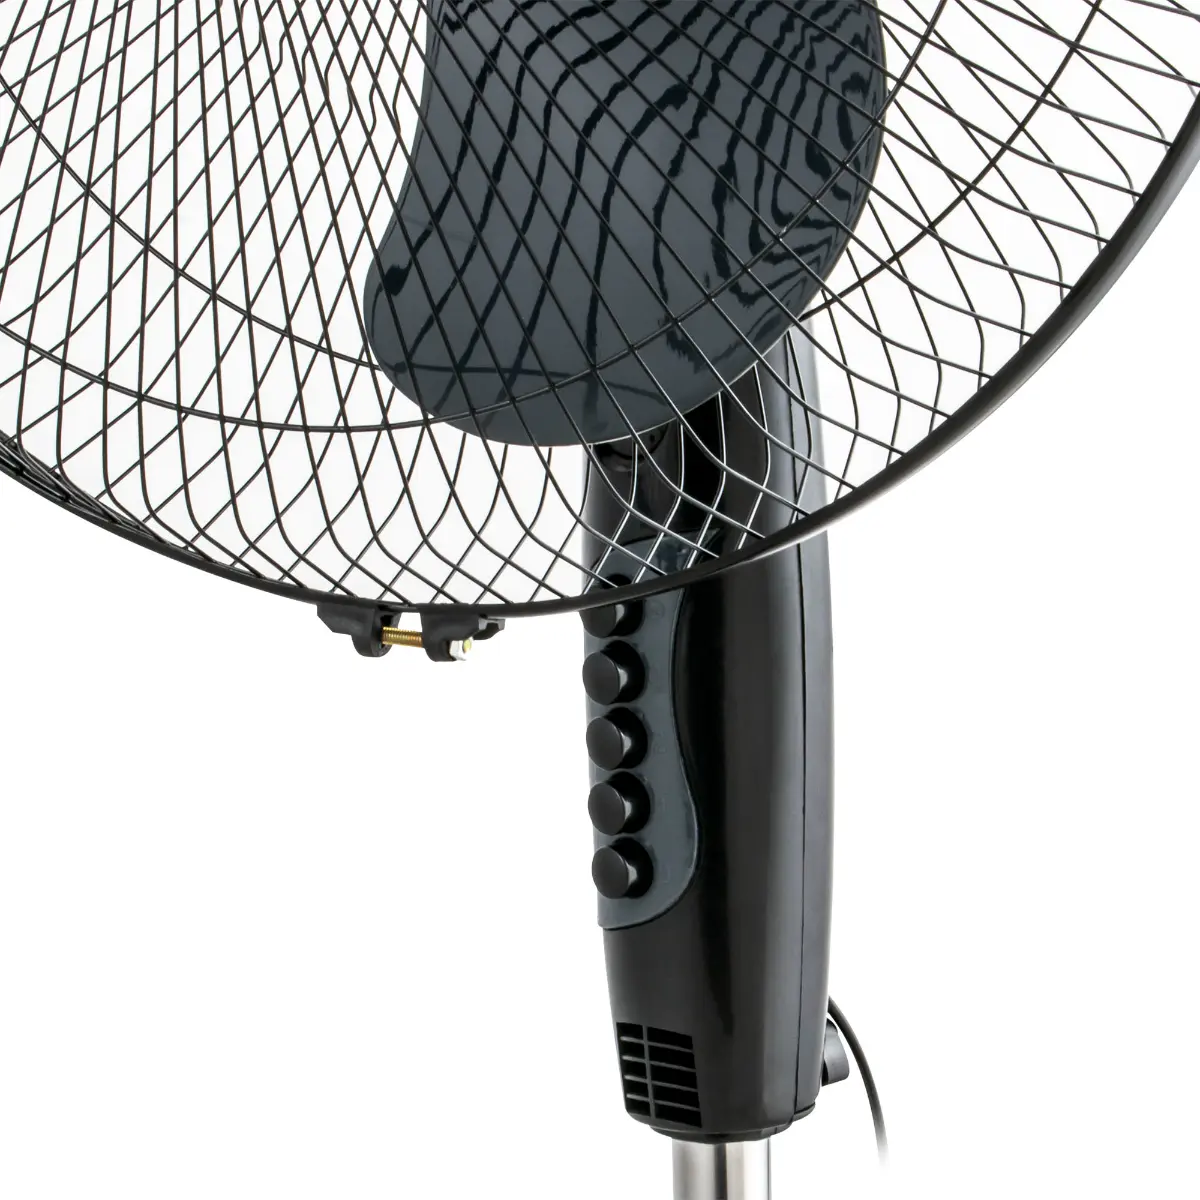 Ventilator cu picior Zass ZF 1604, 45W, Negru/Gri